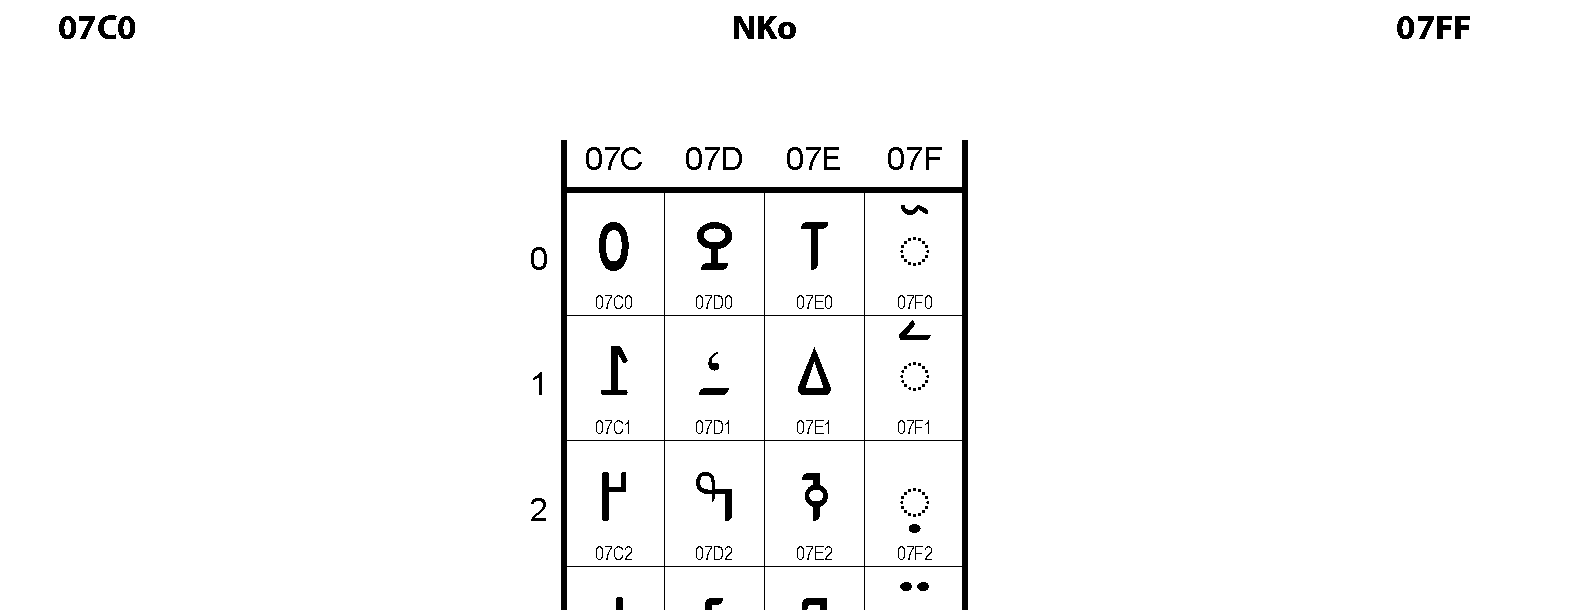 Unicode - N'Ko